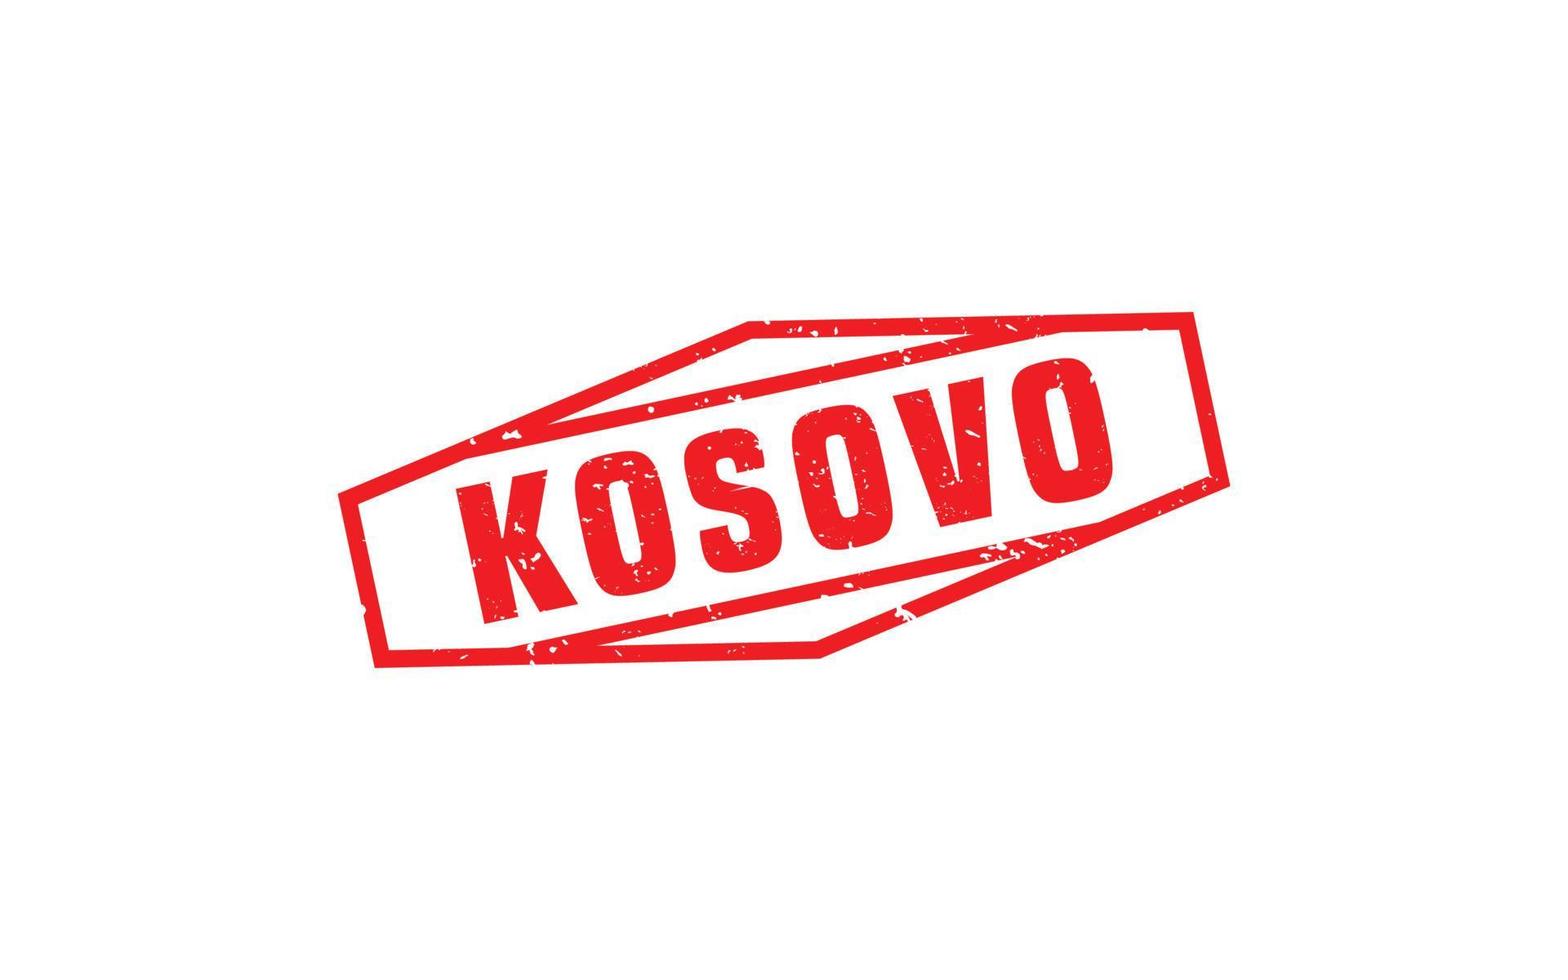 Kosovo carimbo de borracha com estilo grunge em fundo branco vetor